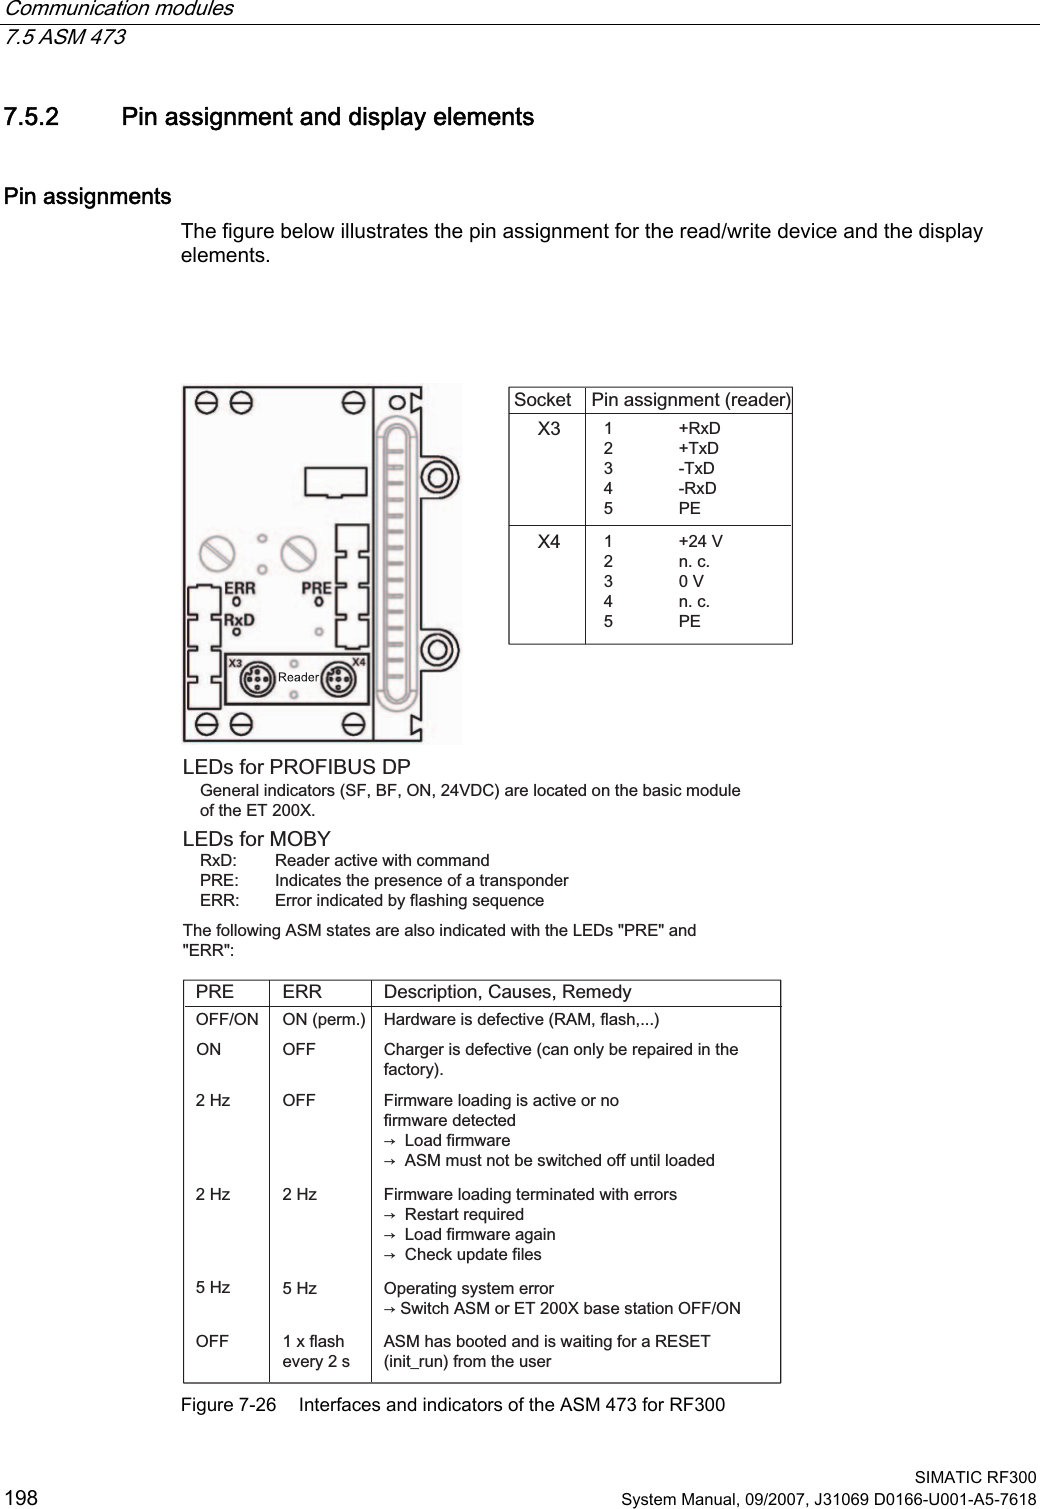 Communication modules   7.5 ASM 473  SIMATIC RF300 198 System Manual, 09/2007, J31069 D0166-U001-A5-7618 7.5.2 Pin assignment and display elements Pin assignments The figure below illustrates the pin assignment for the read/write device and the display elements.    2))+]+]2))21+]+]+]2));;21SHUP2))21 5[&apos; 7[&apos; 7[&apos; 5[&apos; 3( 9 QF 9 QF 3((5535([IODVKHYHU\V6RFNHW 3LQDVVLJQPHQWUHDGHU/(&apos;VIRU352),%86&apos;3*HQHUDOLQGLFDWRUV6)%)219&apos;&amp;DUHORFDWHGRQWKHEDVLFPRGXOHRIWKH(7;/(&apos;VIRU02%&lt;5[&apos; 5HDGHUDFWLYHZLWKFRPPDQG35( ,QGLFDWHVWKHSUHVHQFHRIDWUDQVSRQGHU(55 (UURULQGLFDWHGE\IODVKLQJVHTXHQFH7KHIROORZLQJ$60VWDWHVDUHDOVRLQGLFDWHGZLWKWKH/(&apos;V35(DQG(55&apos;HVFULSWLRQ&amp;DXVHV5HPHG\+DUGZDUHLVGHIHFWLYH5$0IODVK&amp;KDUJHULVGHIHFWLYHFDQRQO\EHUHSDLUHGLQWKHIDFWRU\)LUPZDUHORDGLQJLVDFWLYHRUQRILUPZDUHGHWHFWHGൺ/RDGILUPZDUHൺ$60PXVWQRWEHVZLWFKHGRIIXQWLOORDGHG)LUPZDUHORDGLQJWHUPLQDWHGZLWKHUURUVൺ5HVWDUWUHTXLUHGൺ/RDGILUPZDUHDJDLQൺ&amp;KHFNXSGDWHILOHV2SHUDWLQJV\VWHPHUURUൺ6ZLWFK$60RU(7;EDVHVWDWLRQ2))21$60KDVERRWHGDQGLVZDLWLQJIRUD5(6(7LQLWBUXQIURPWKHXVHU Figure 7-26  Interfaces and indicators of the ASM 473 for RF300 